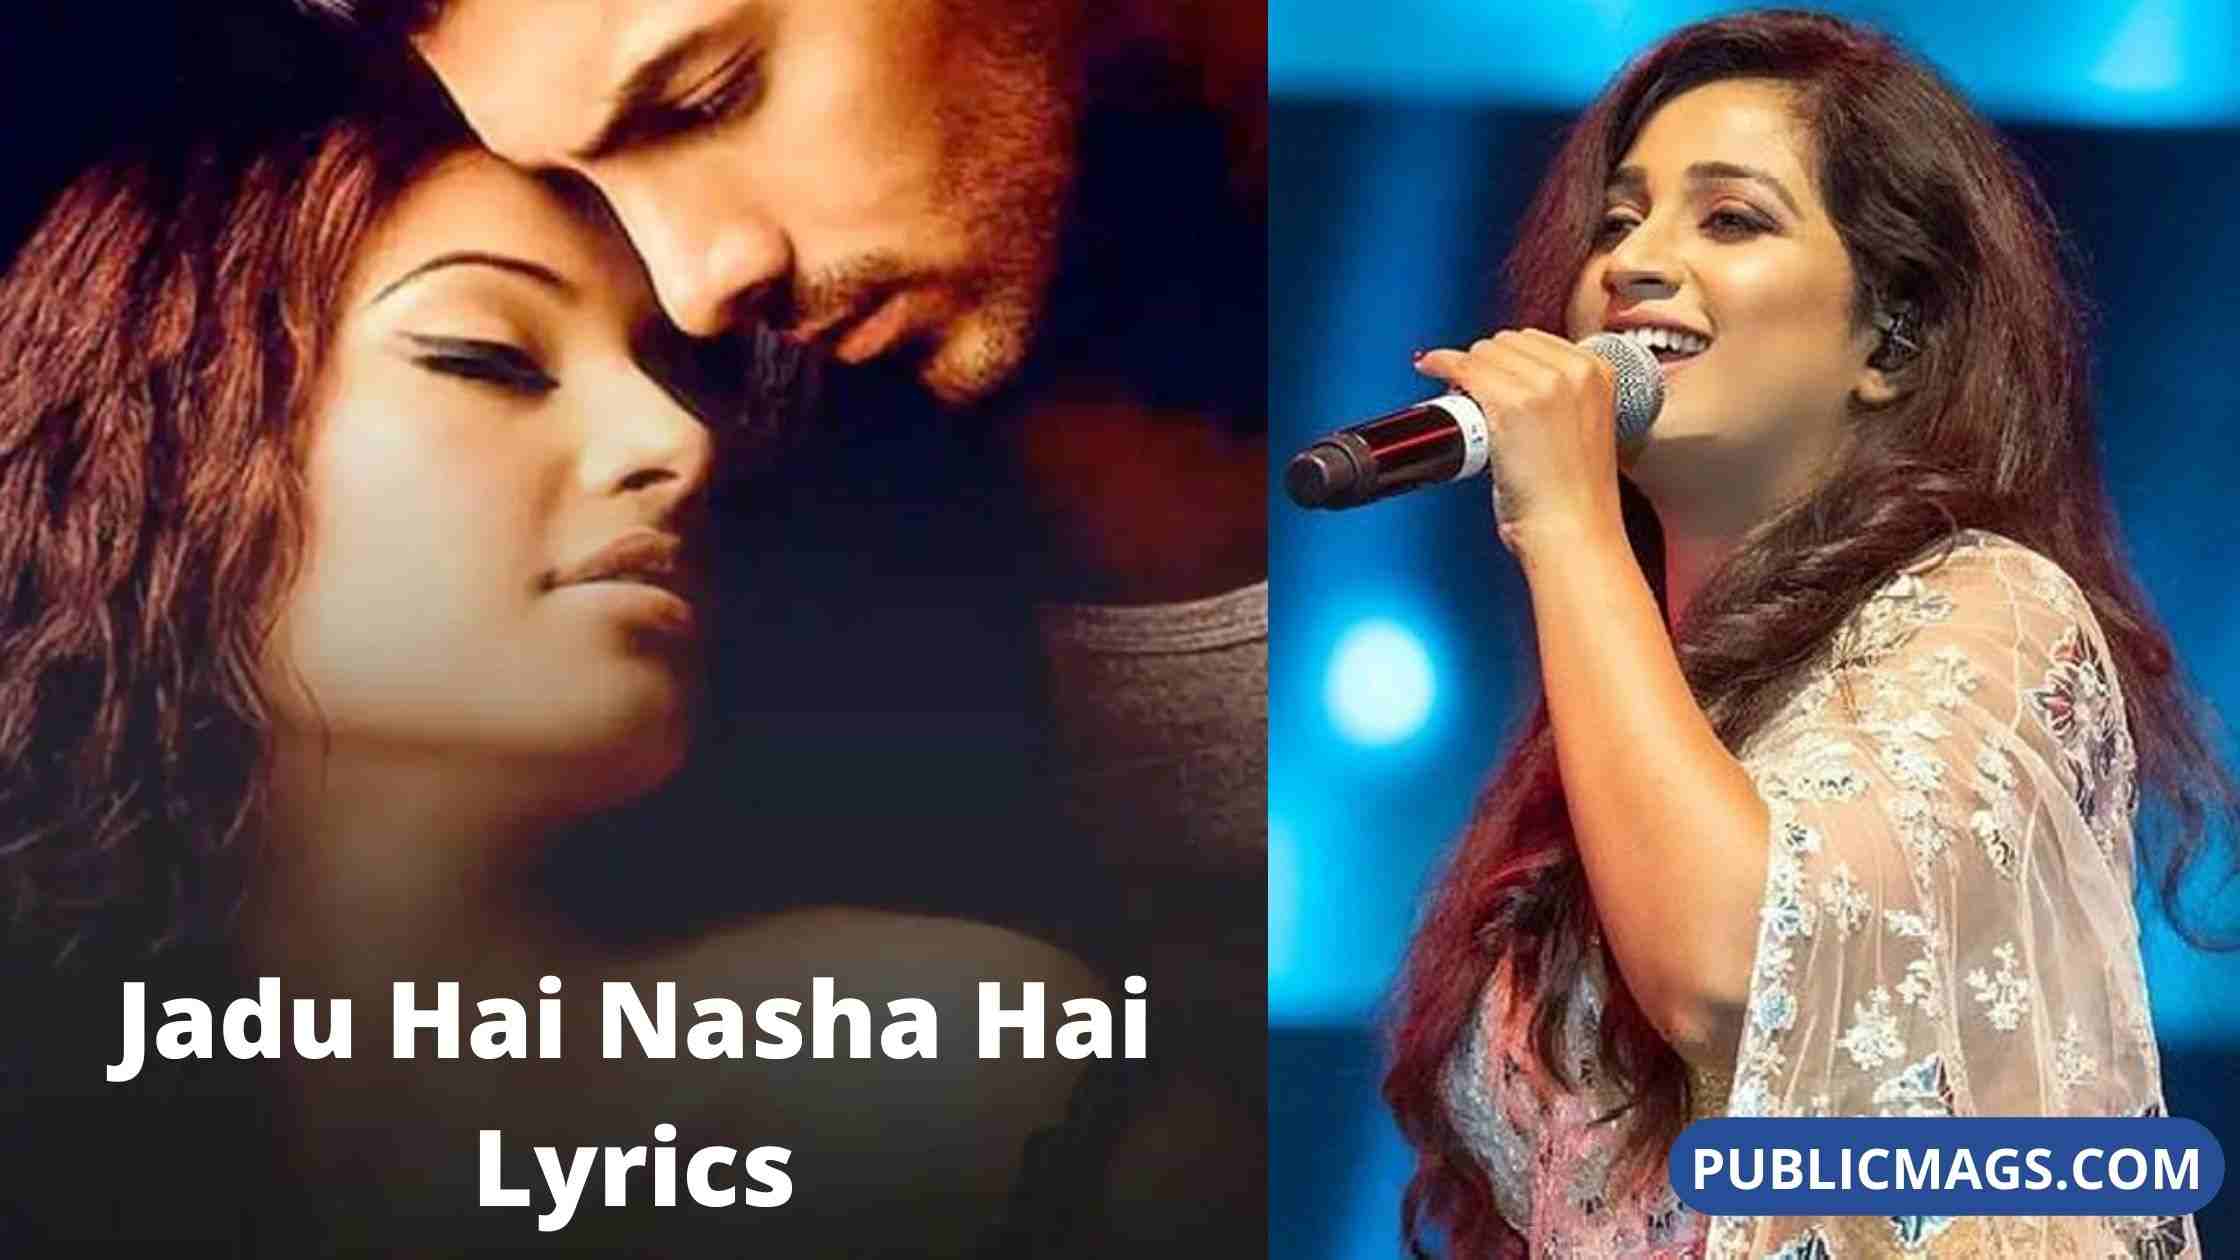 Jadu Hai Nasha Hai Lyrics